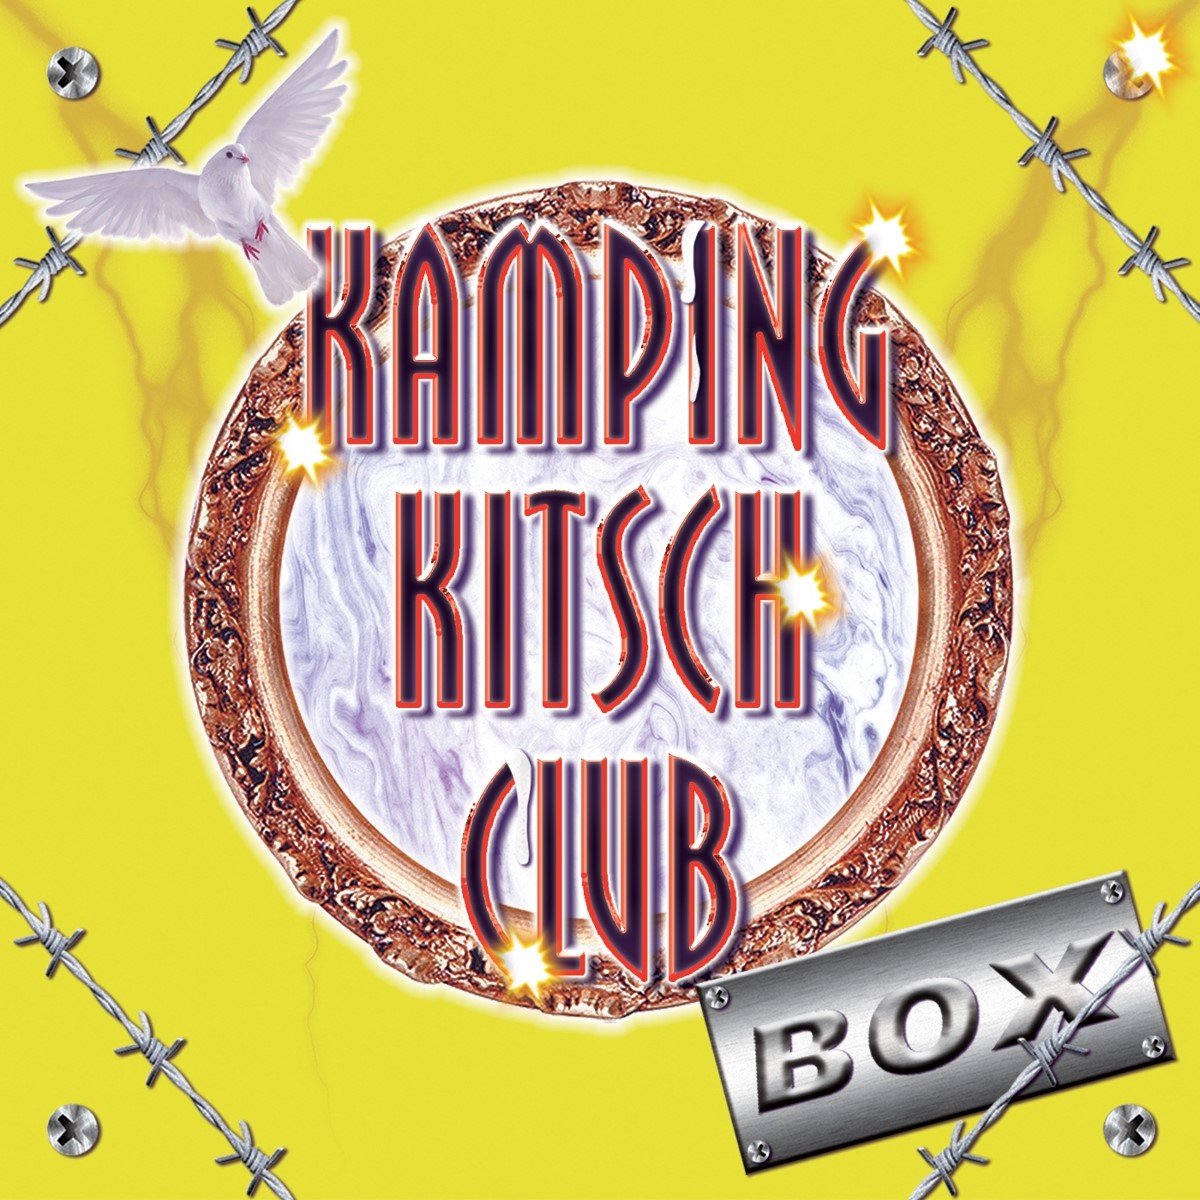 Kamping Kitsch Club Box (CD) - various artists